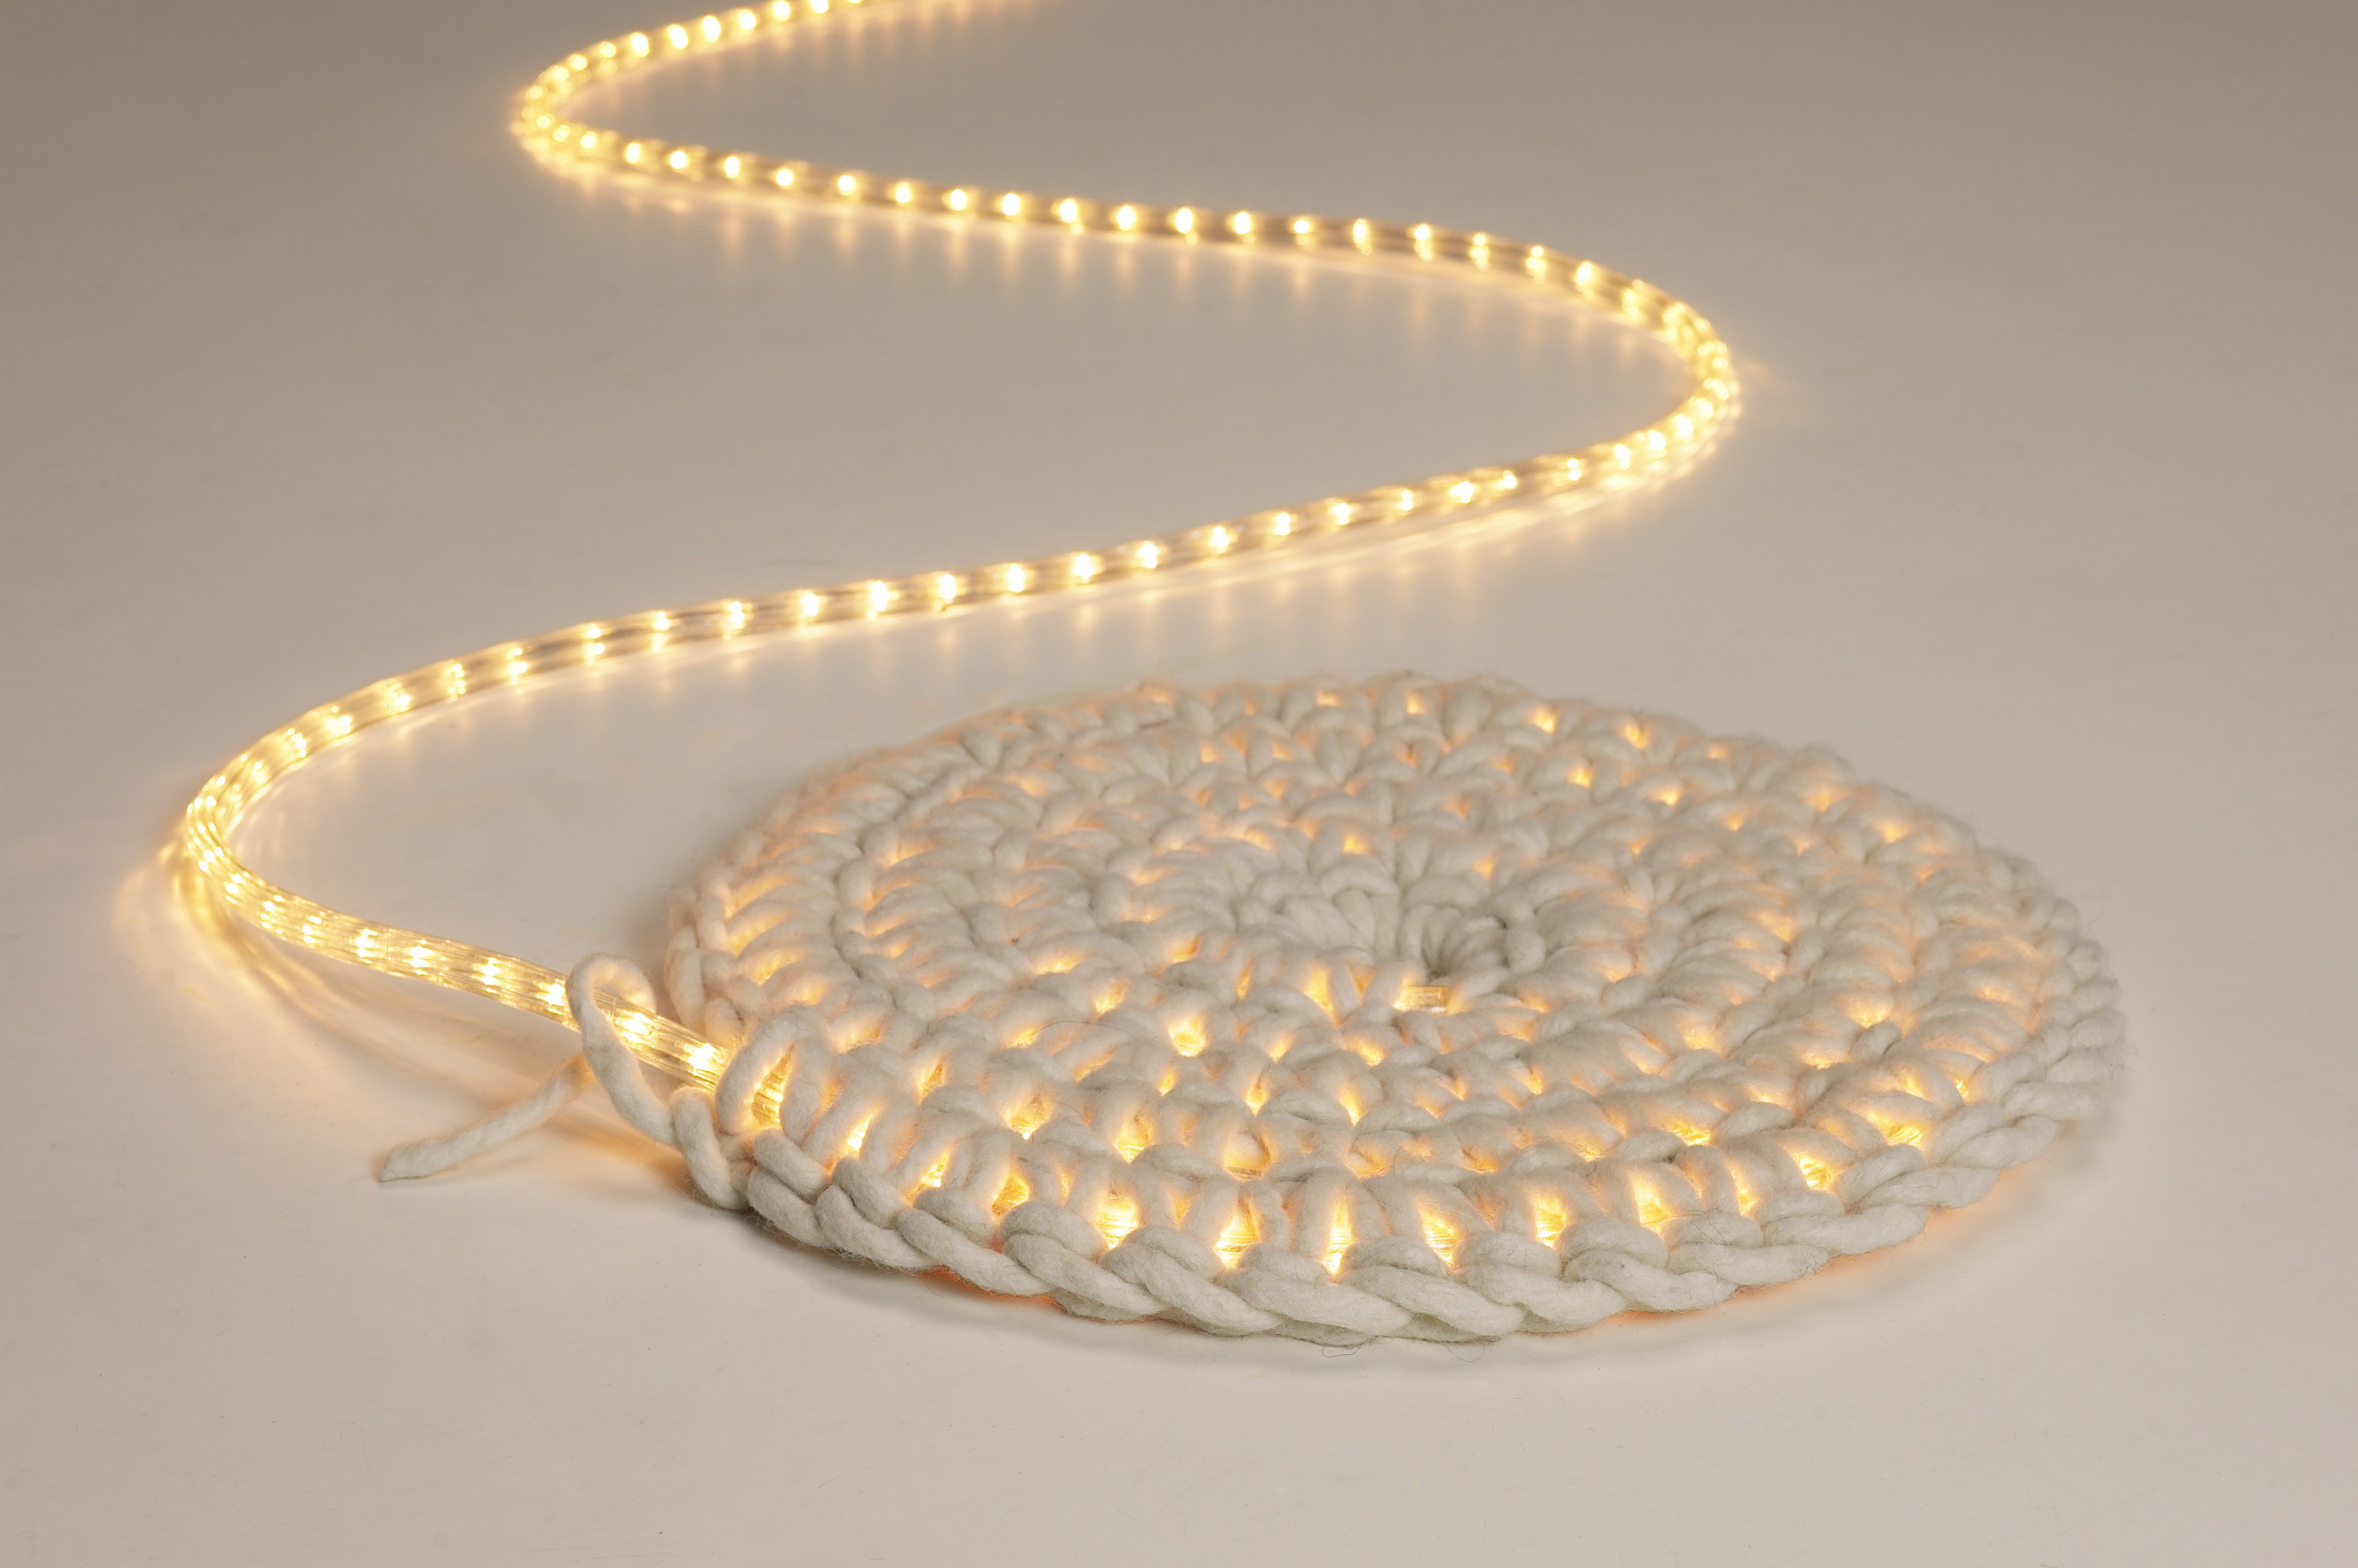 Crochet light mat or wall-hanging